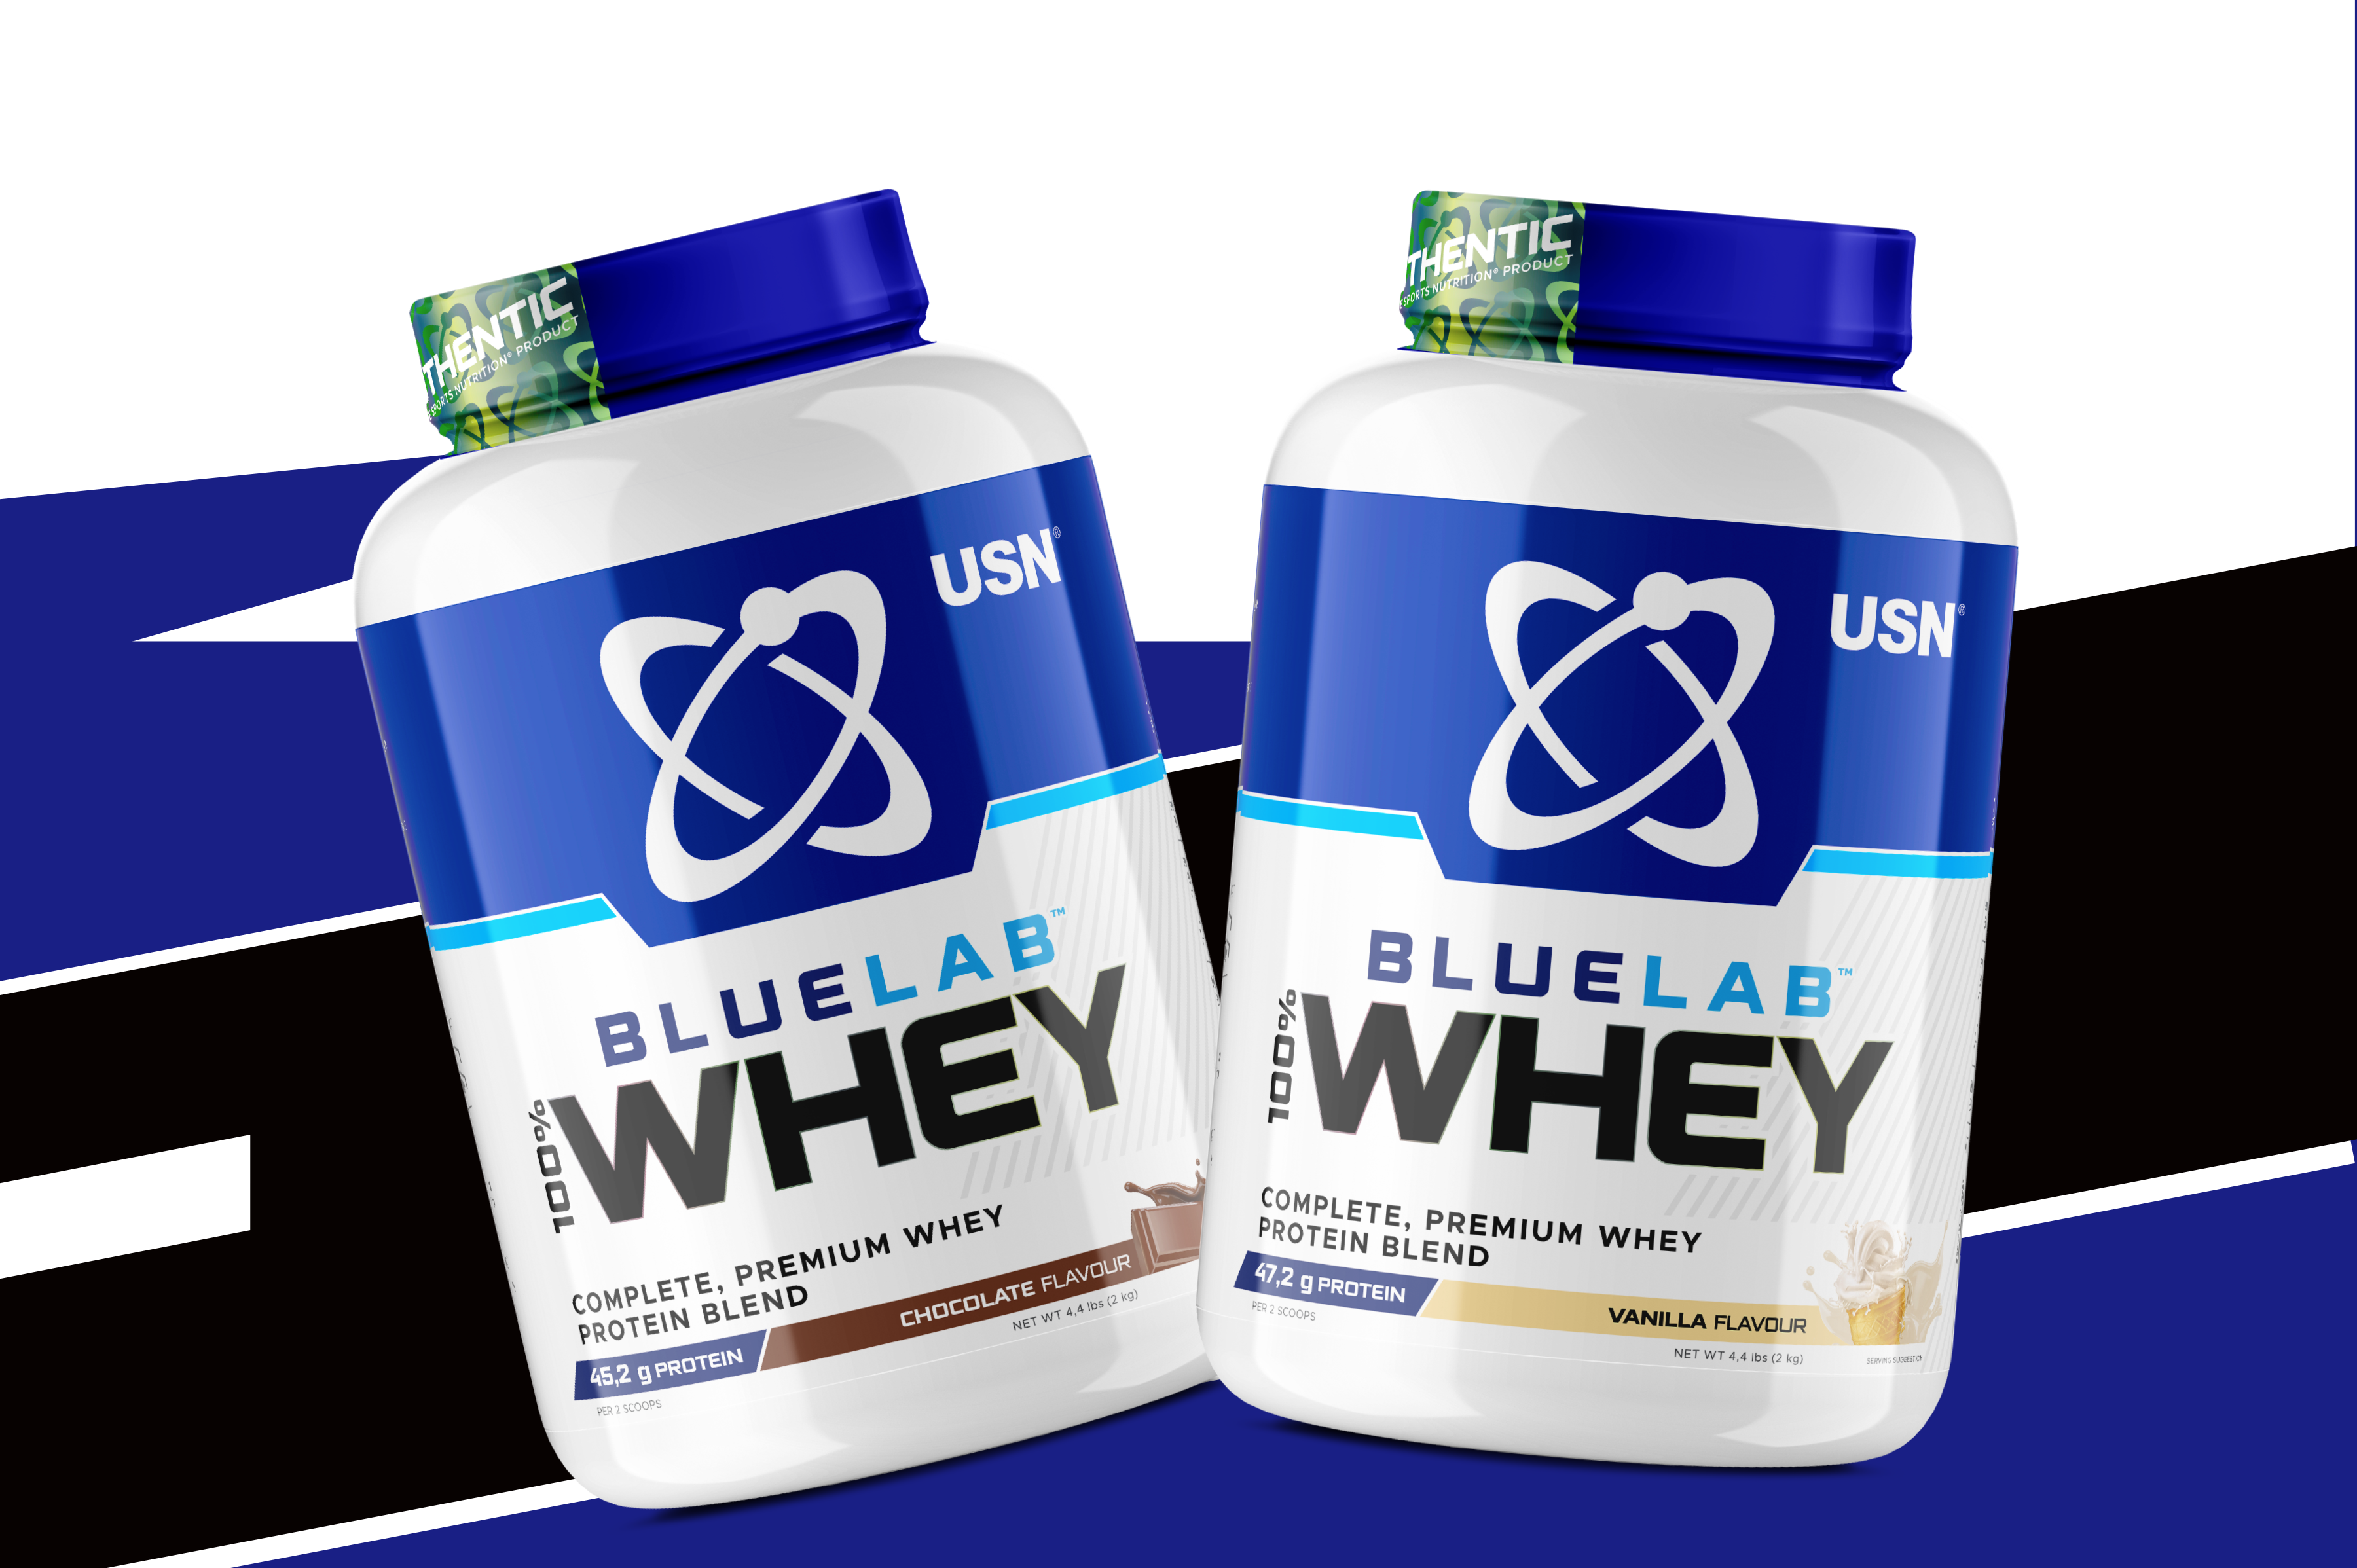 USN blue lab whey protein